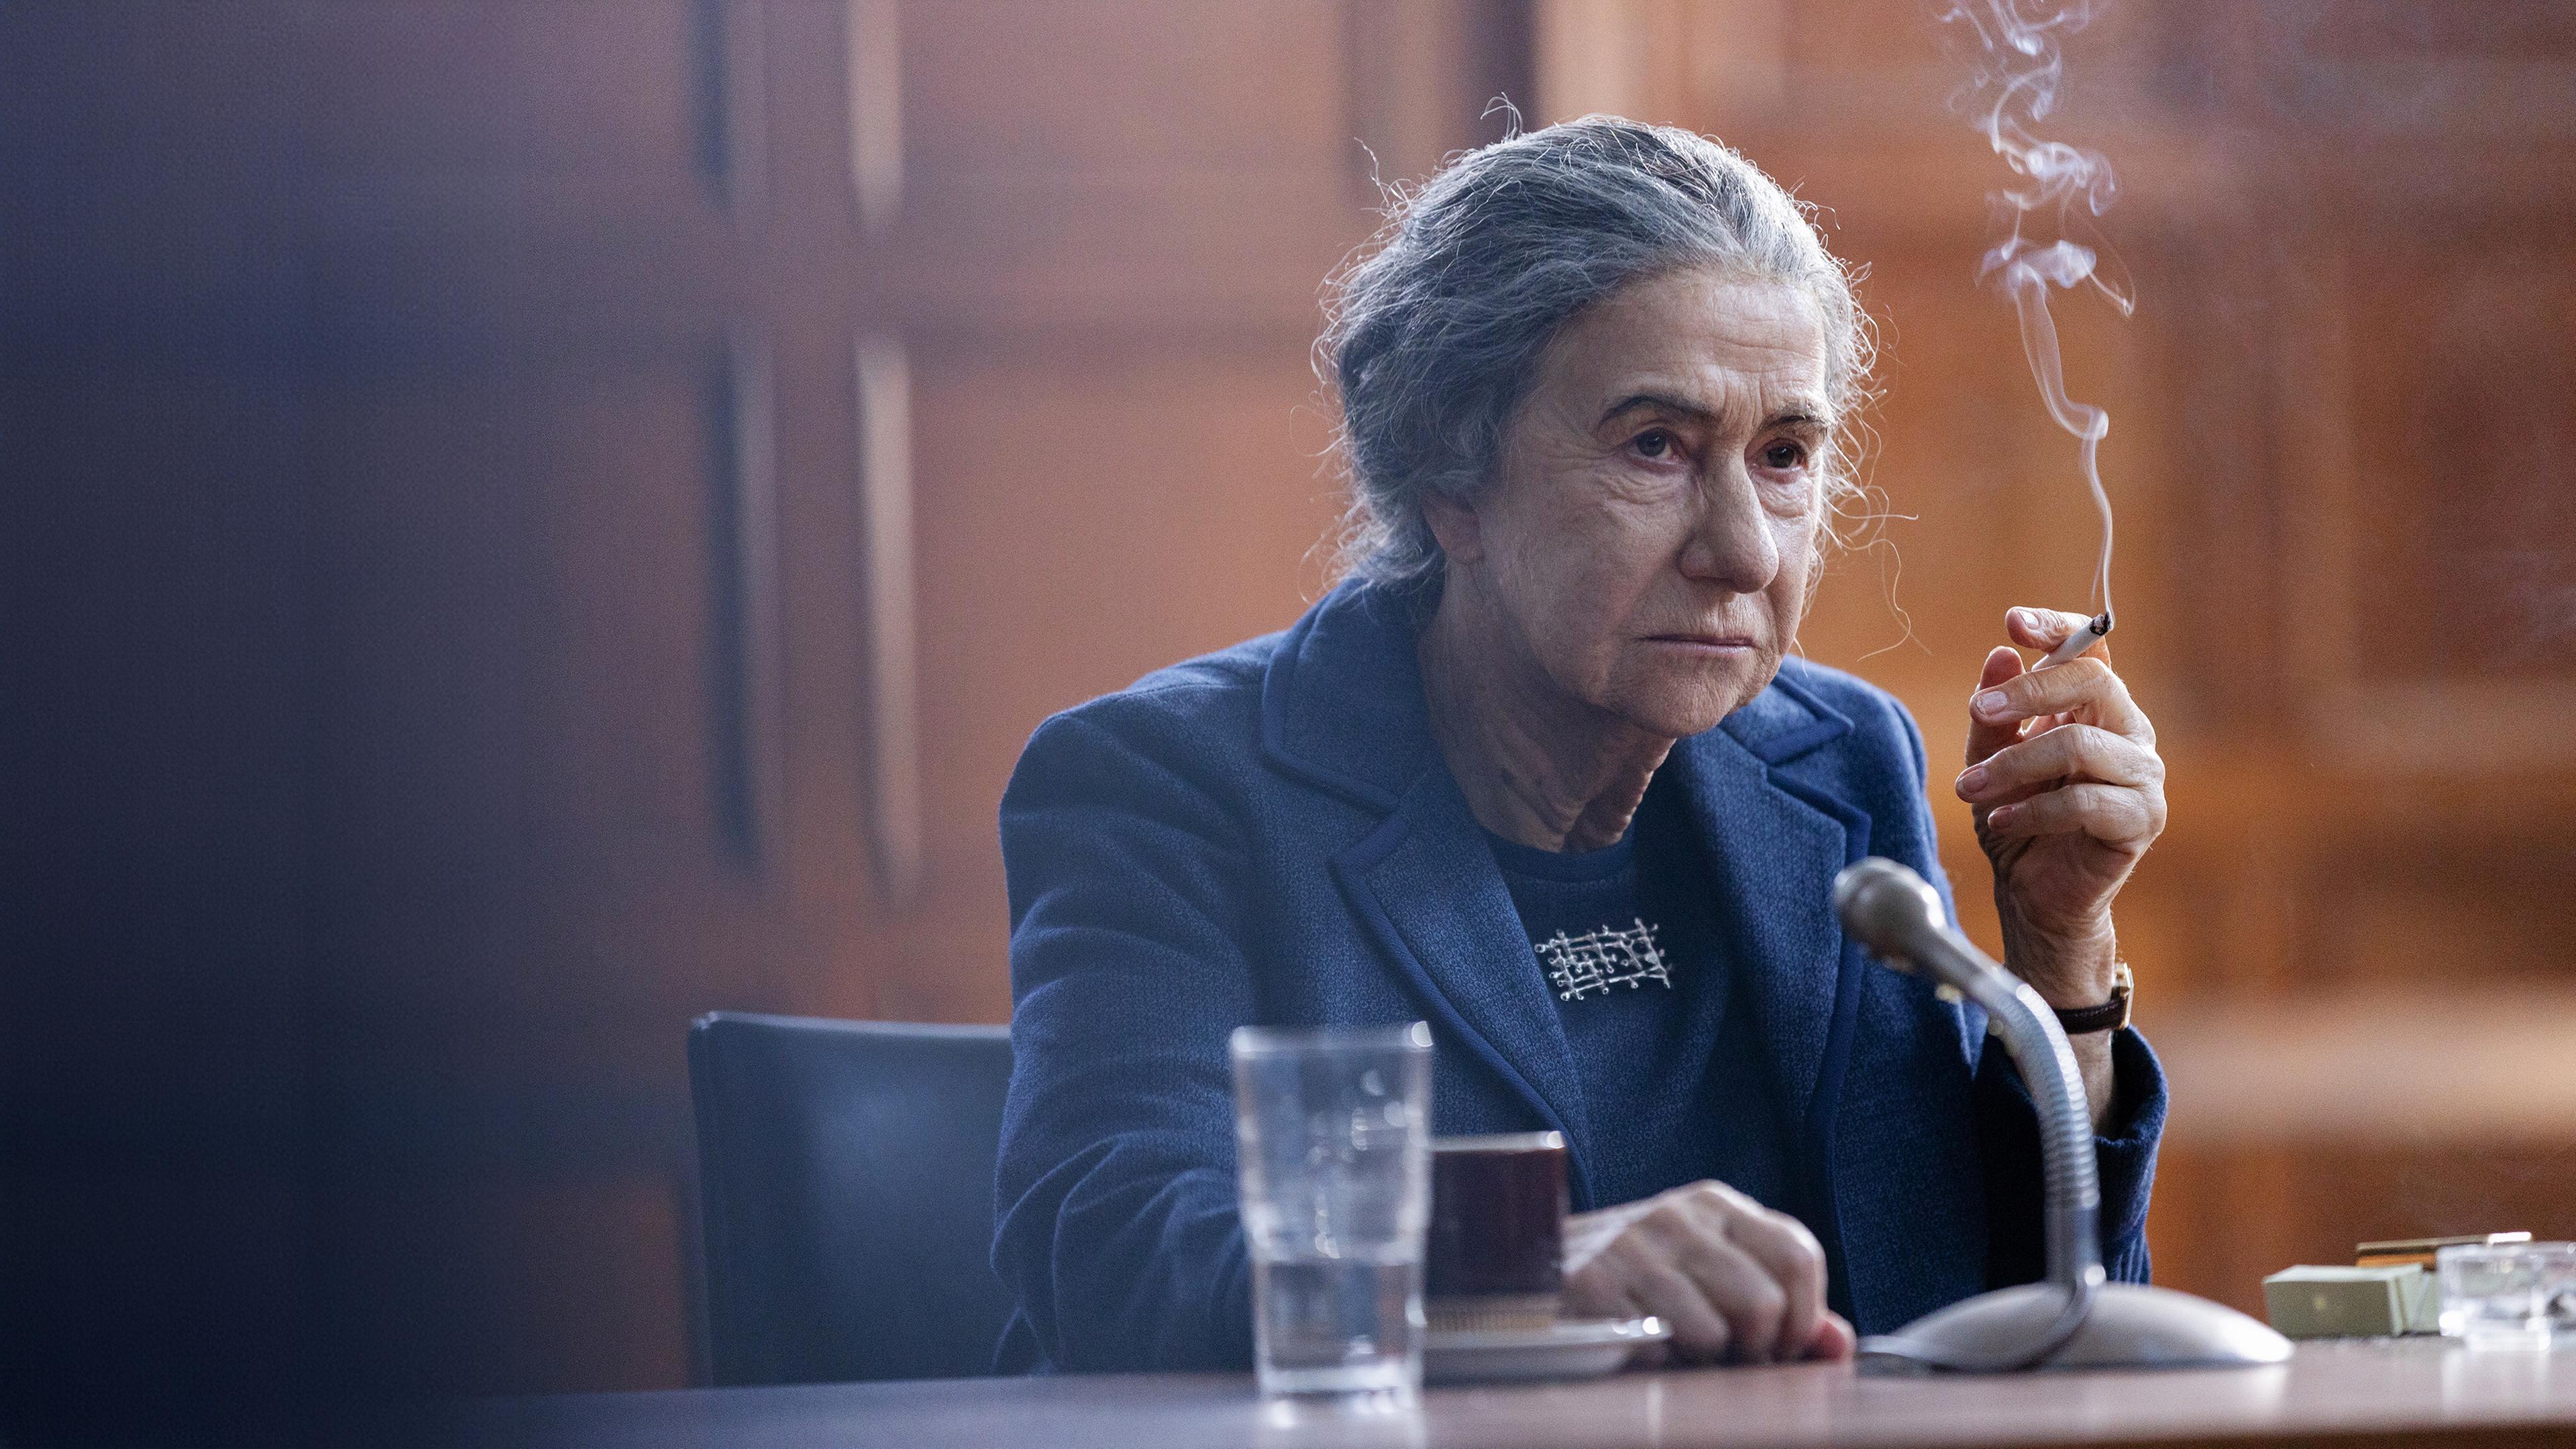 Eine ältere Frau mit zurückgebundenen Haaren sitzt rauchend und mit einer Tasse und einem Glas vor sich an einem Mikrofon.